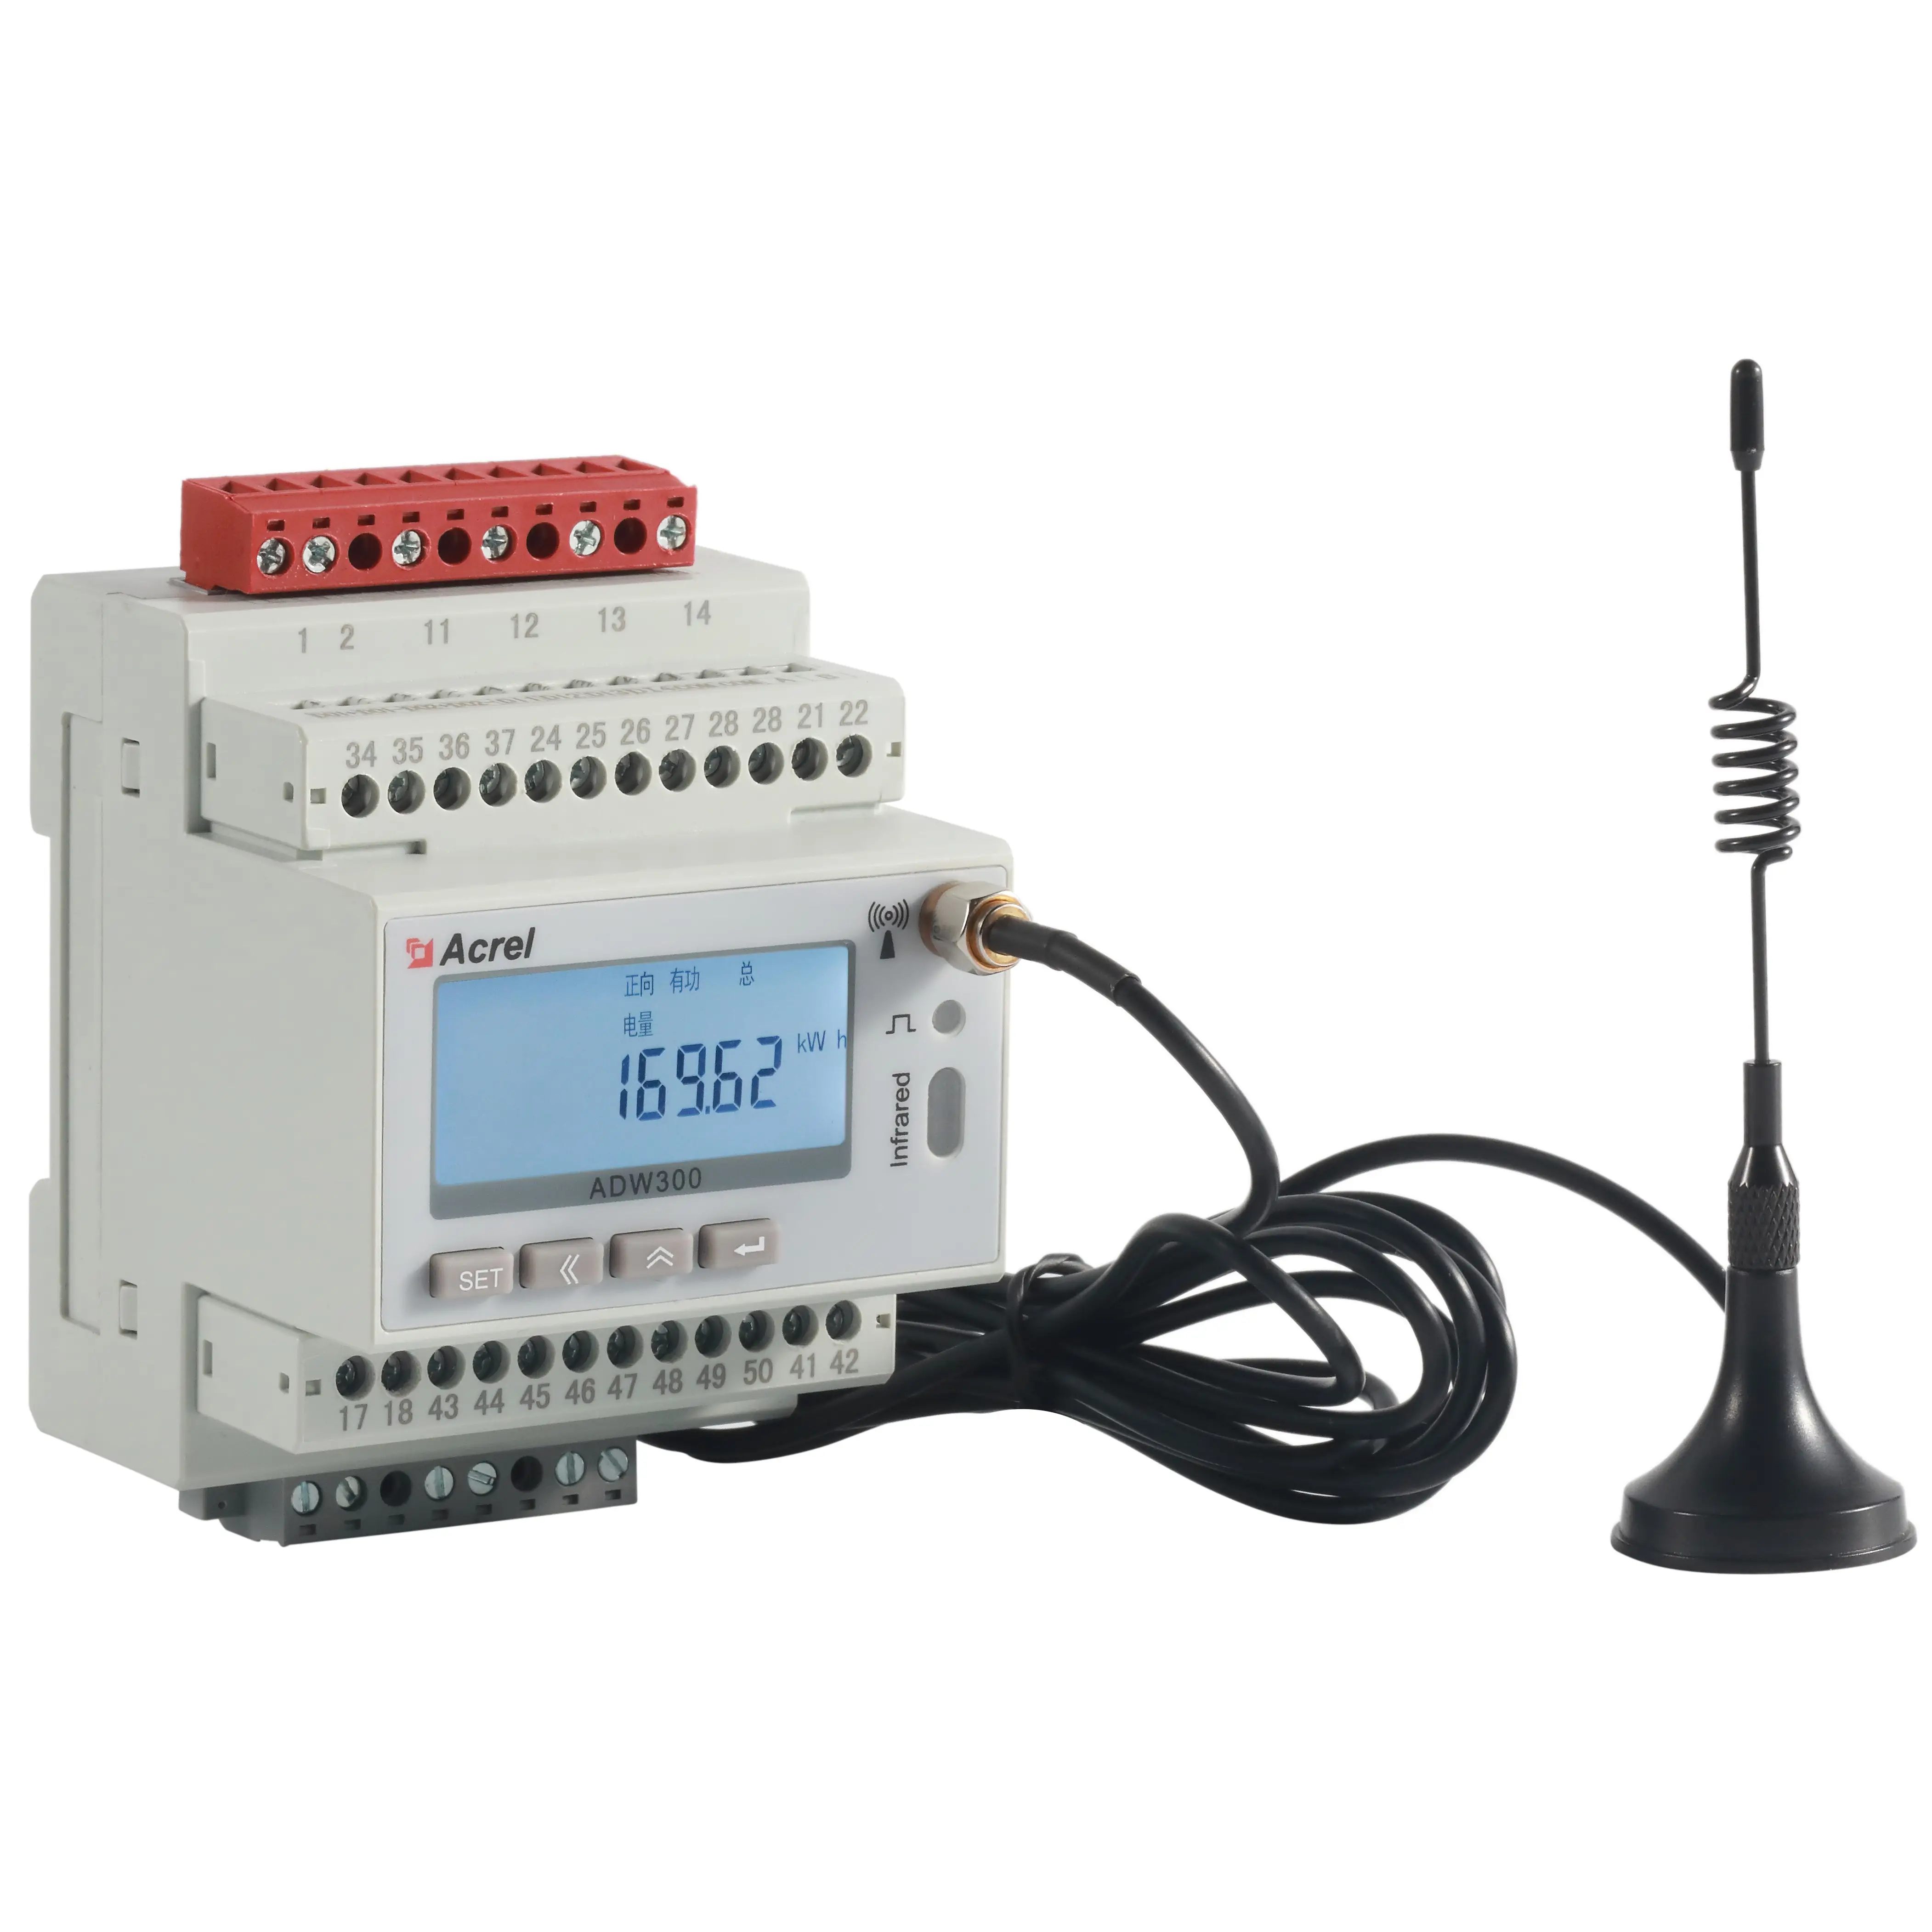 Acrel Adw300 Wifi/4G Mqtt ke Platform langsung Din rel pengukur energi 3 fase kualitas daya penganalisa Wifi pengukur daya